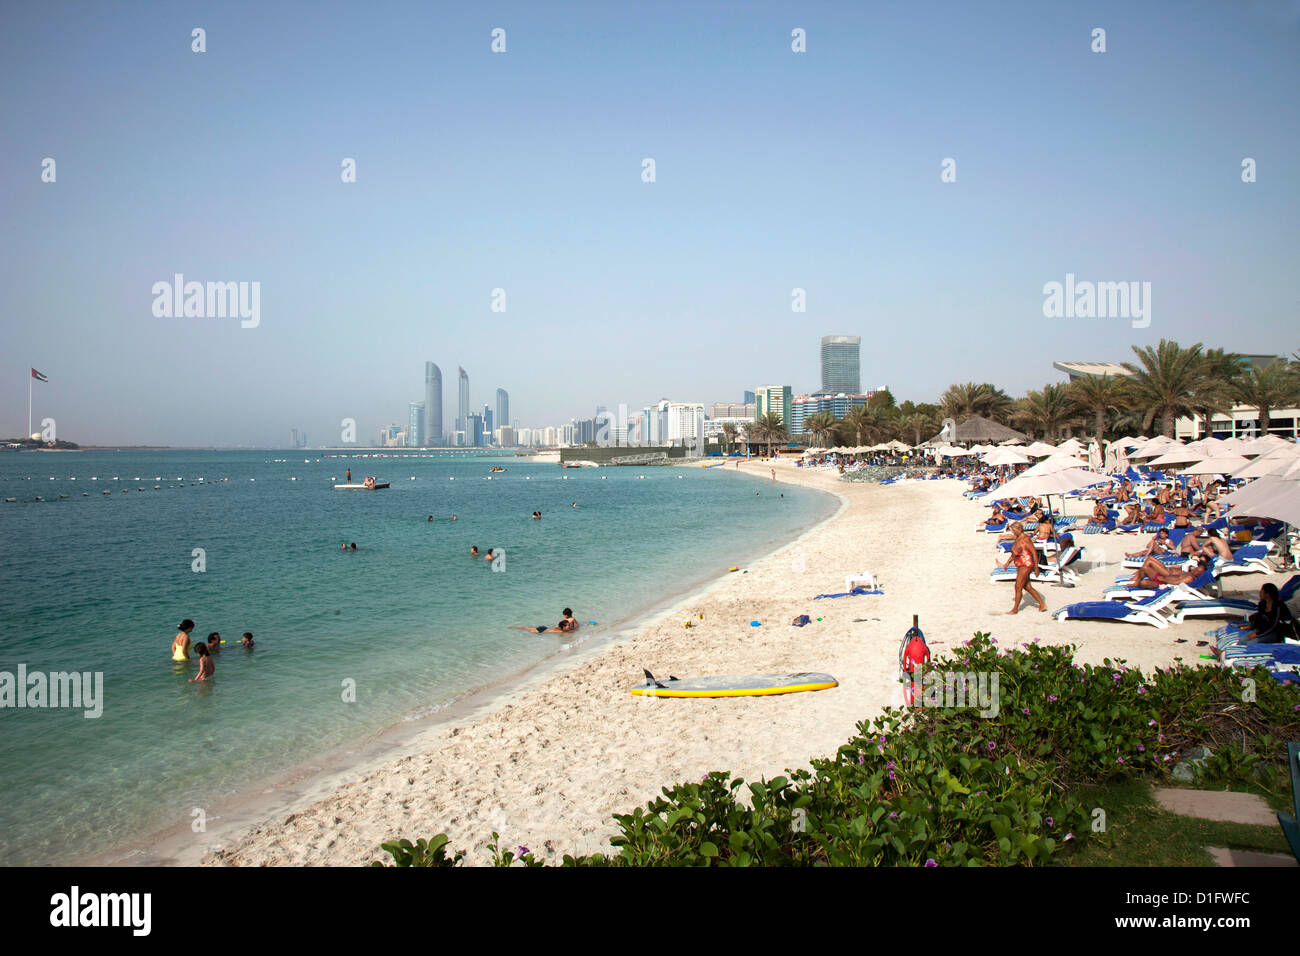 Abu Dhabi, United Arab Emirates, Middle East Stock Photo